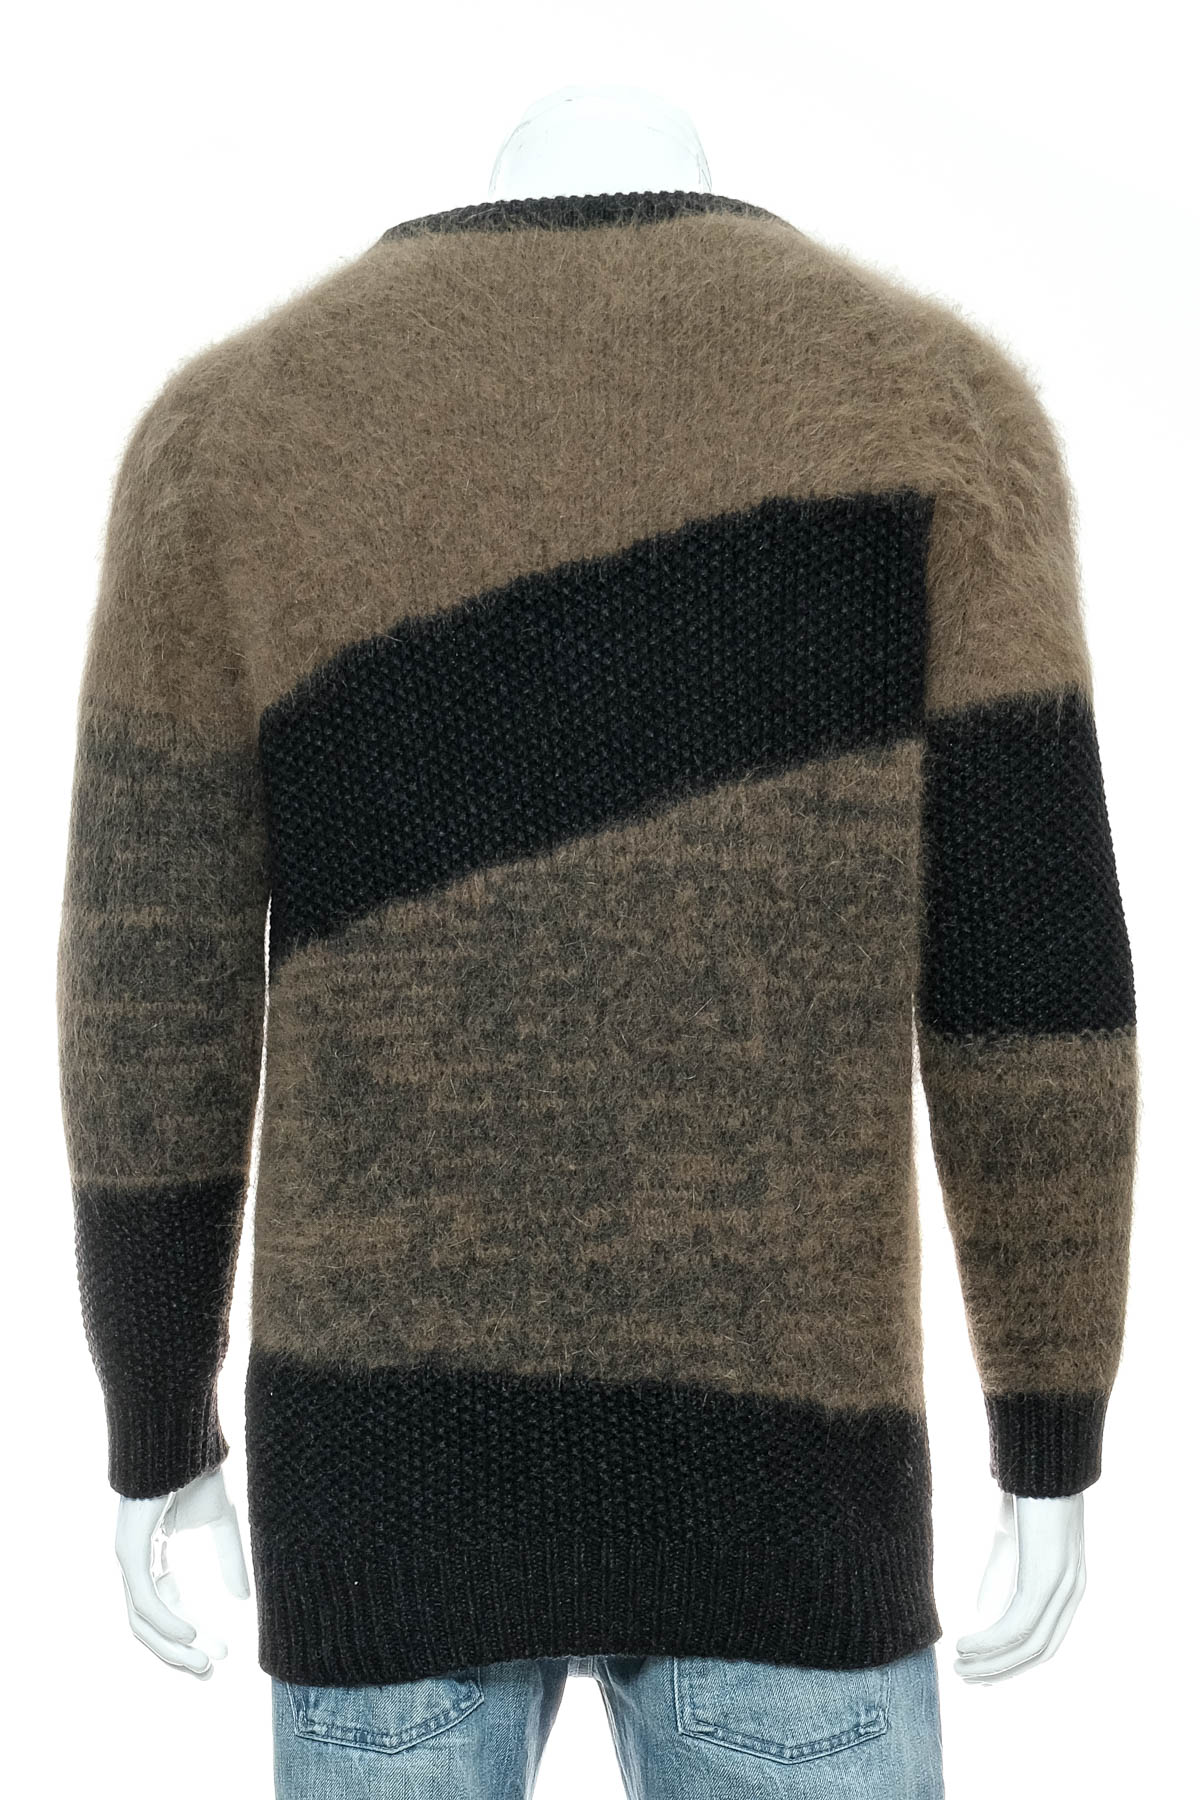 Men's sweater - CLOSED - 1